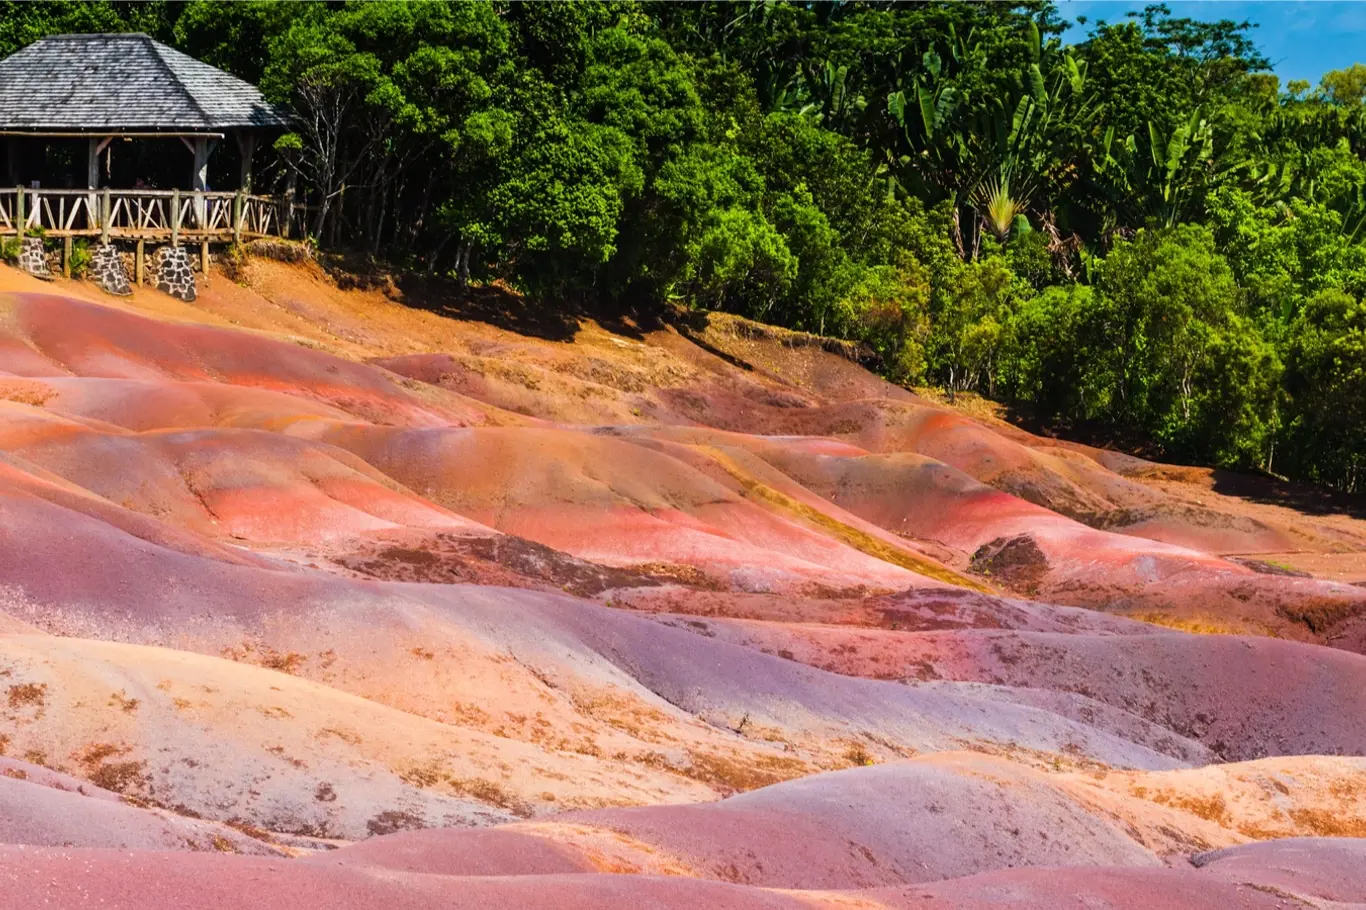 Sedmibarevná země: tajemství barevného lávového písku na Mauriciu odhaleno